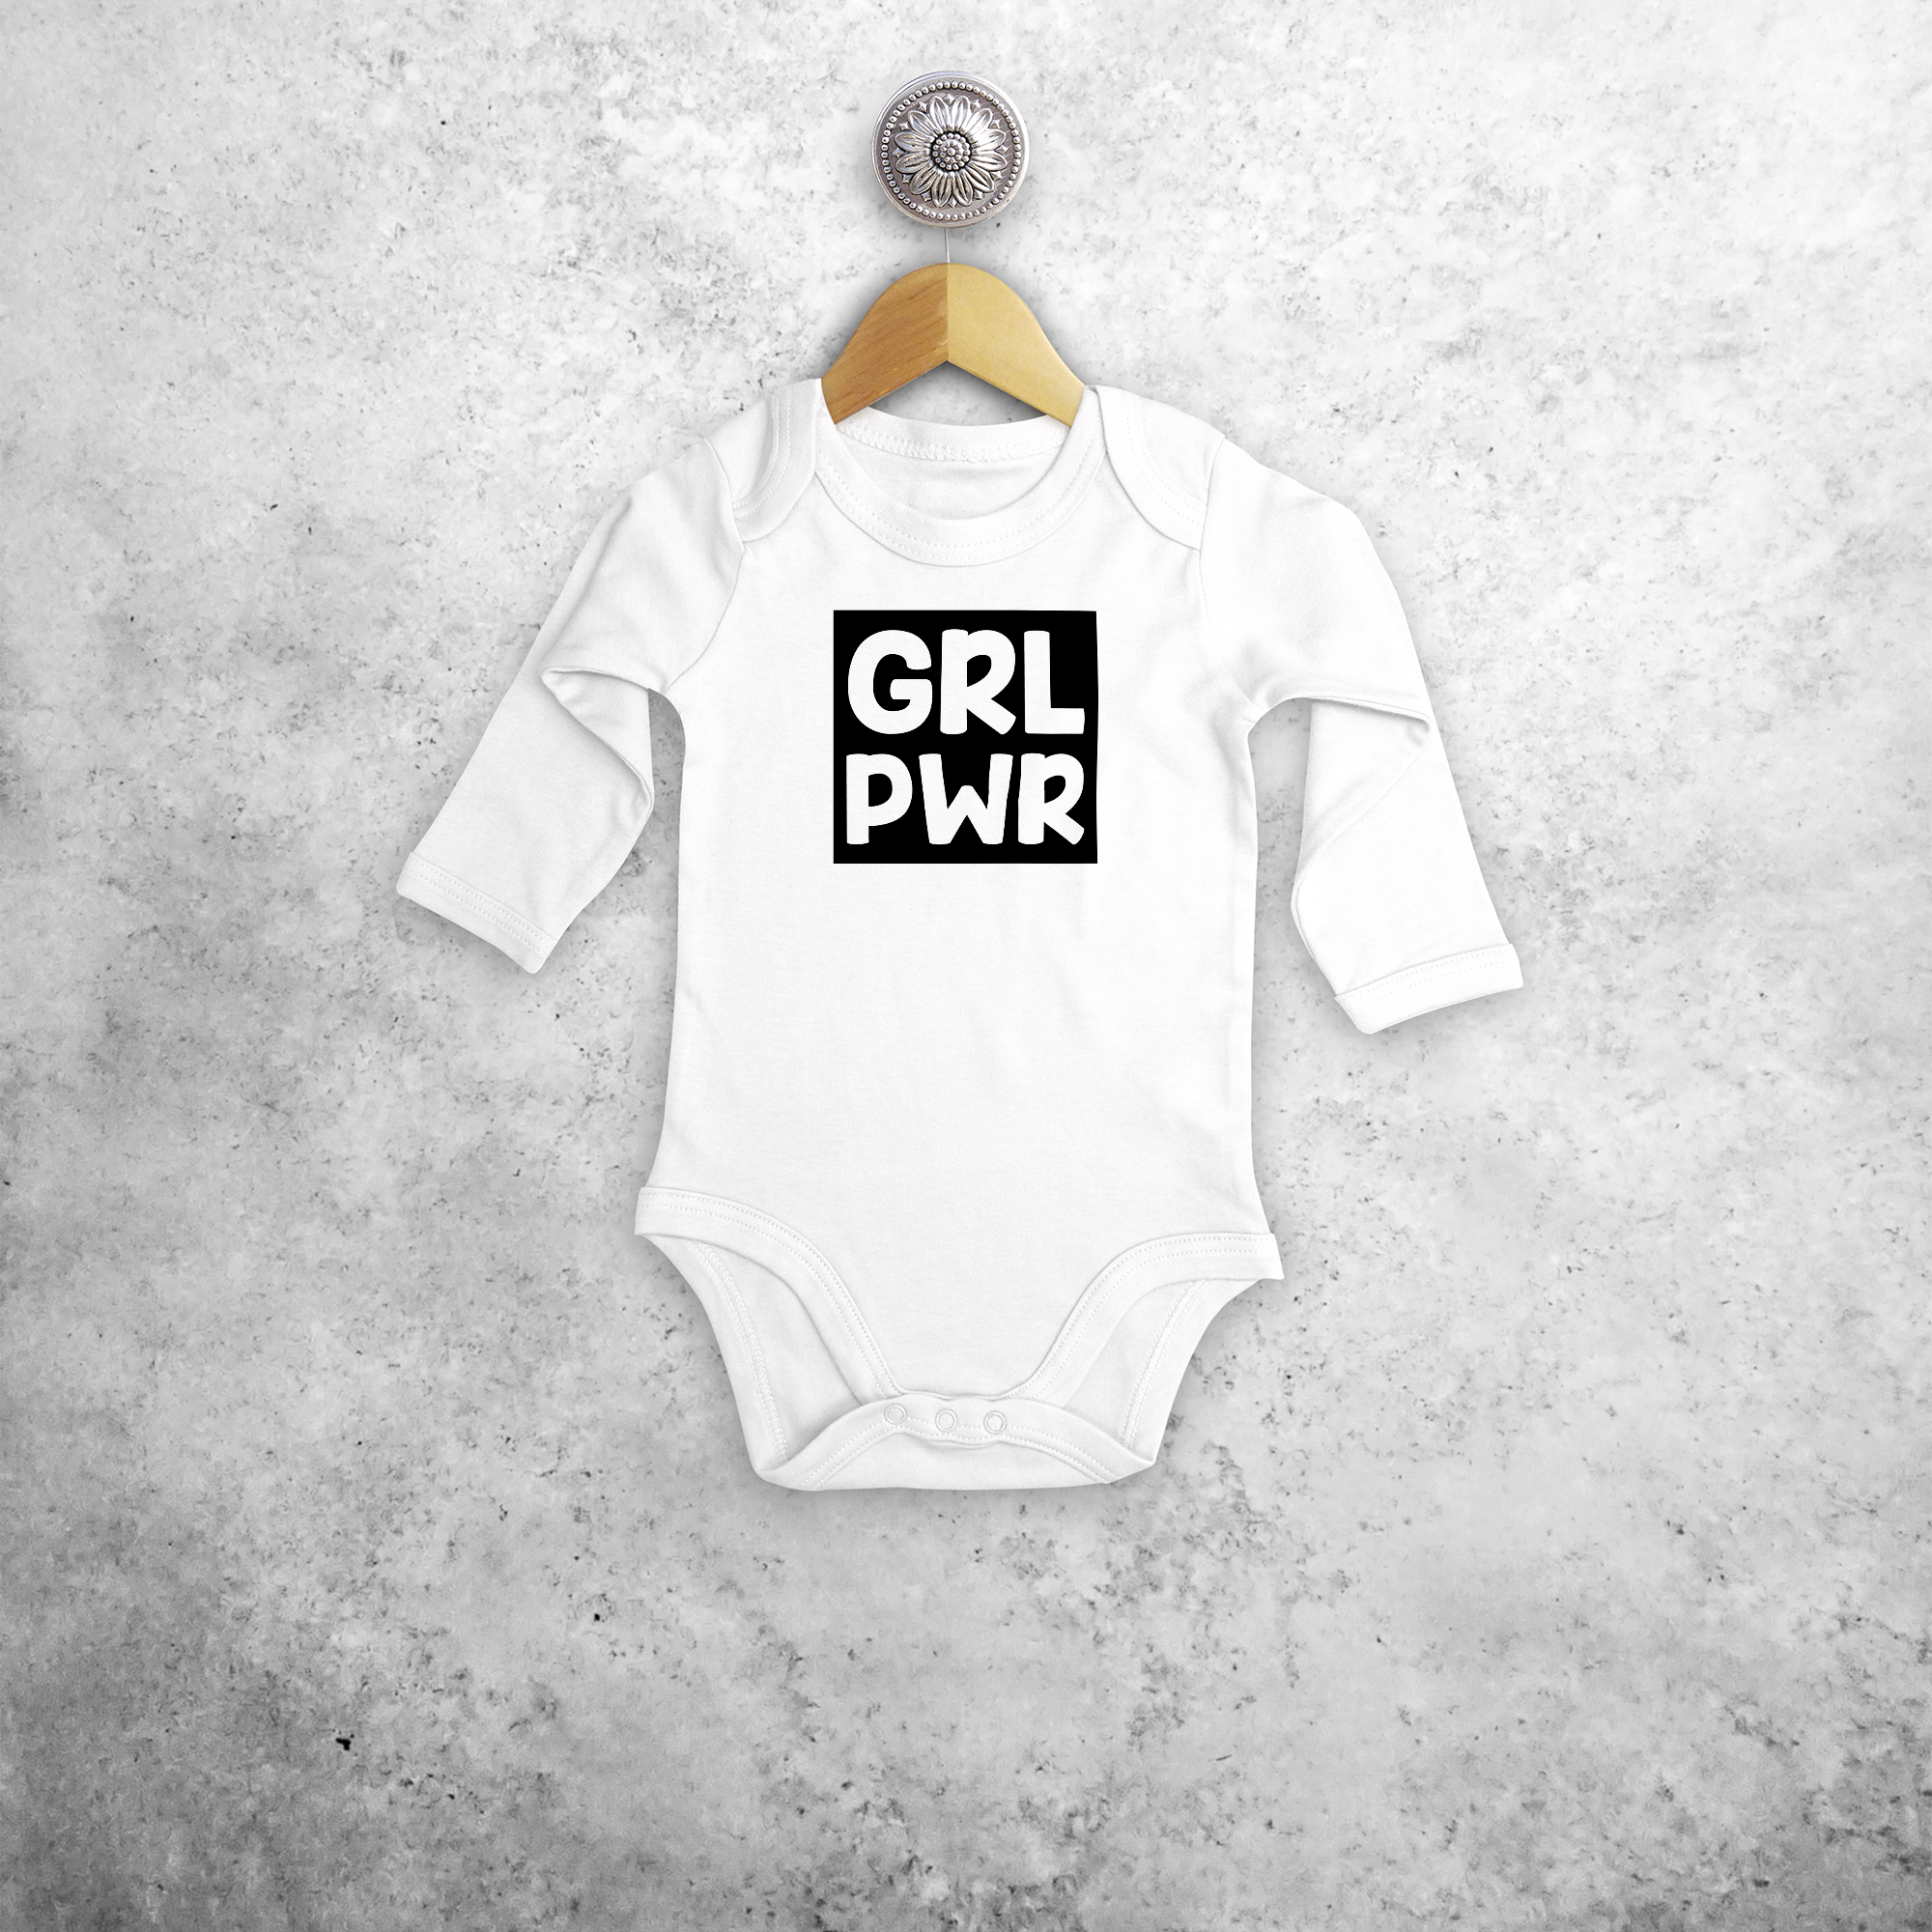 'GRL PWR' baby kruippakje met lange mouwen